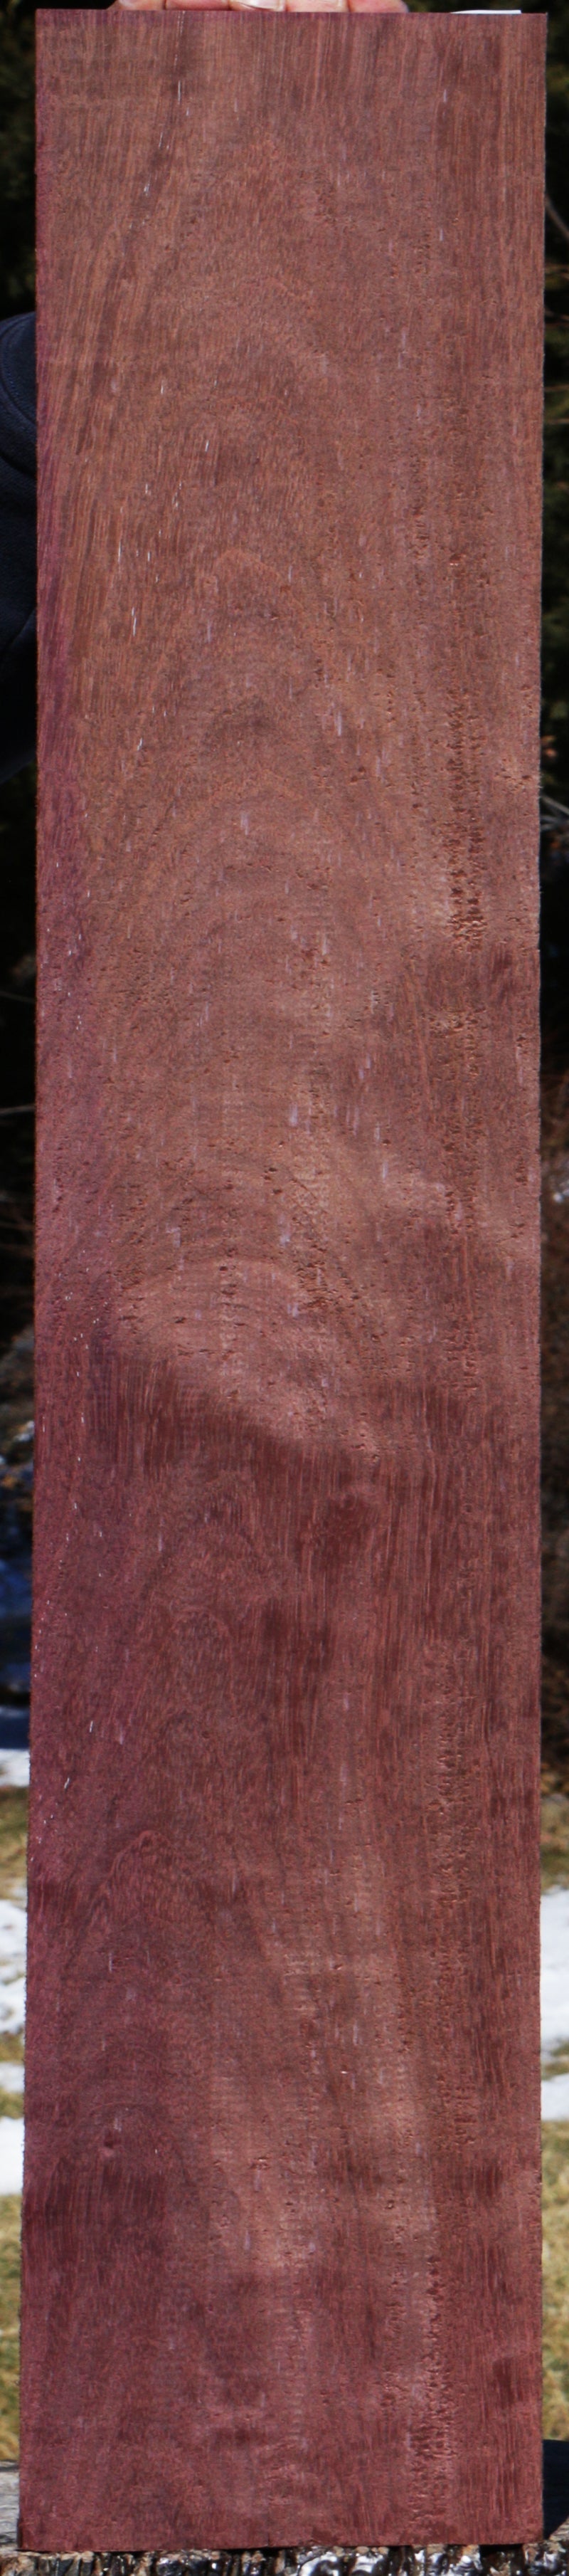 Extra Fancy Purpleheart Lumber